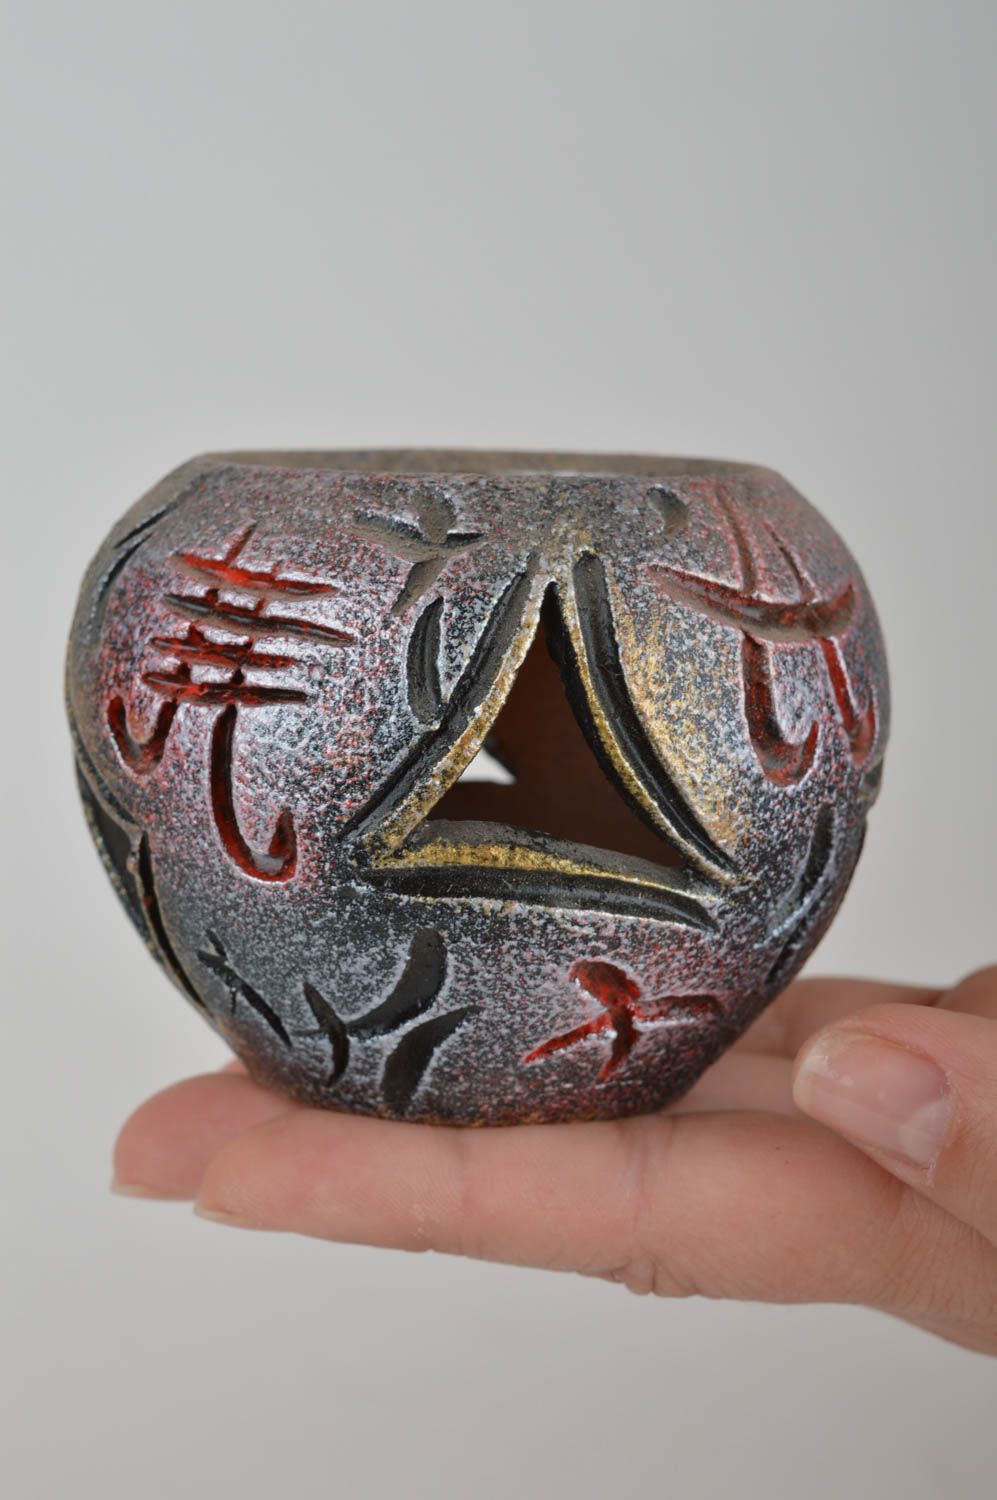 Глиняный подсвечник с росписью красками по керамике хэнд мэйд в японском стиле фото 3